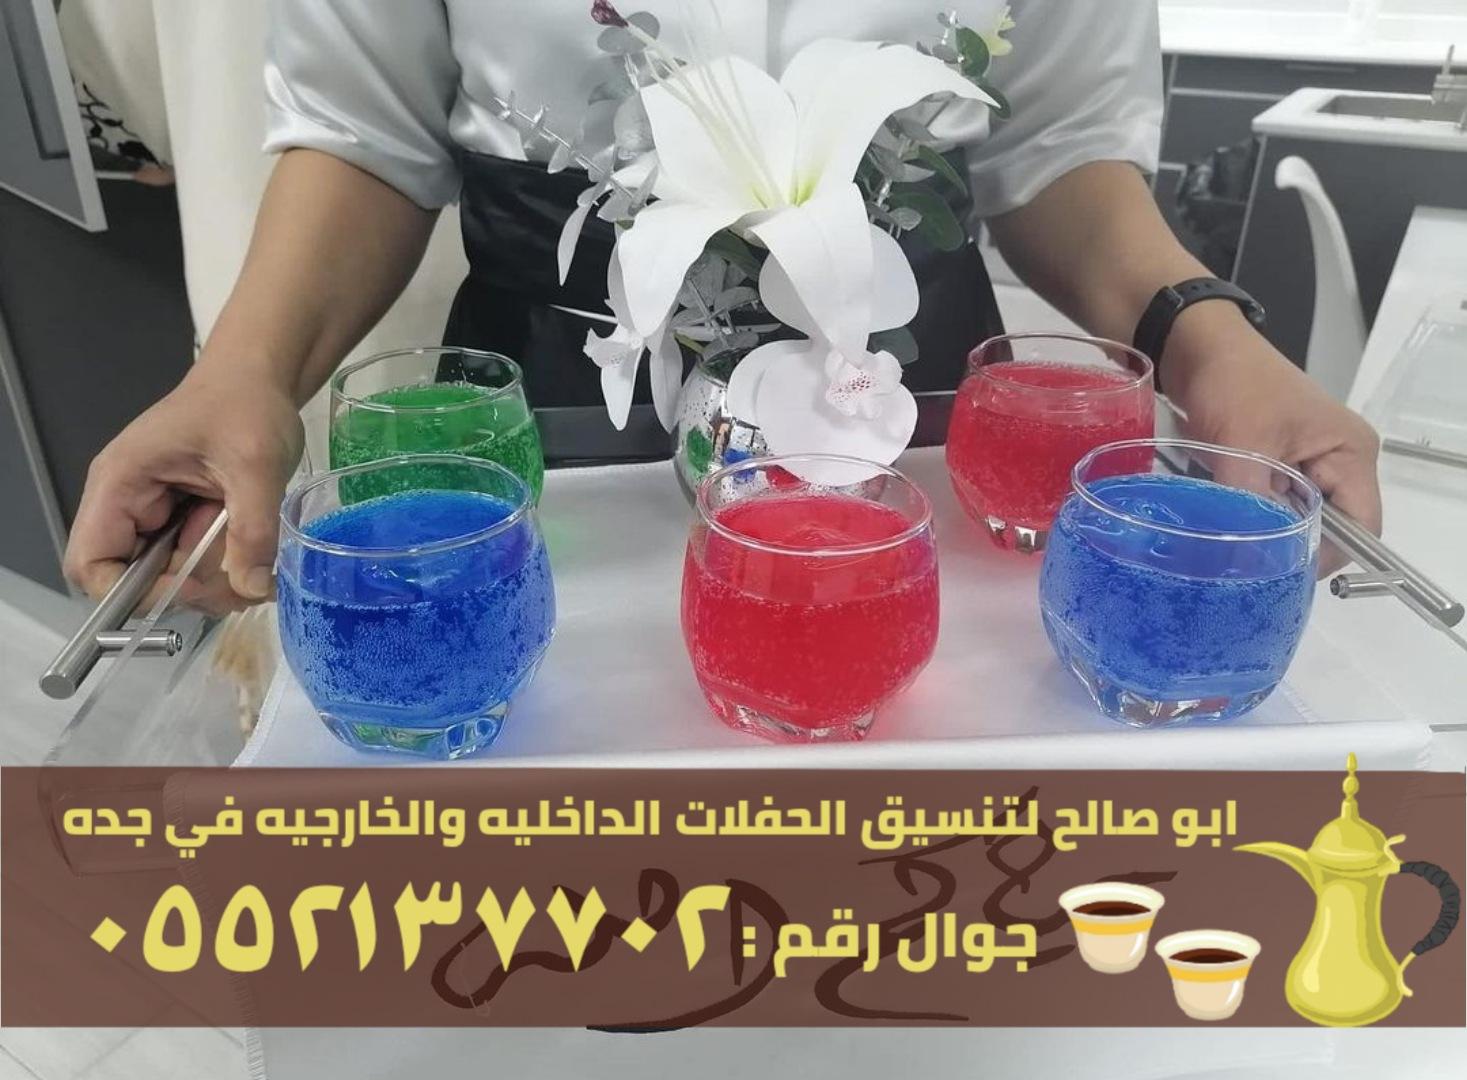 ضيافة قهوة و شاي في جدة,0552137702 523836288